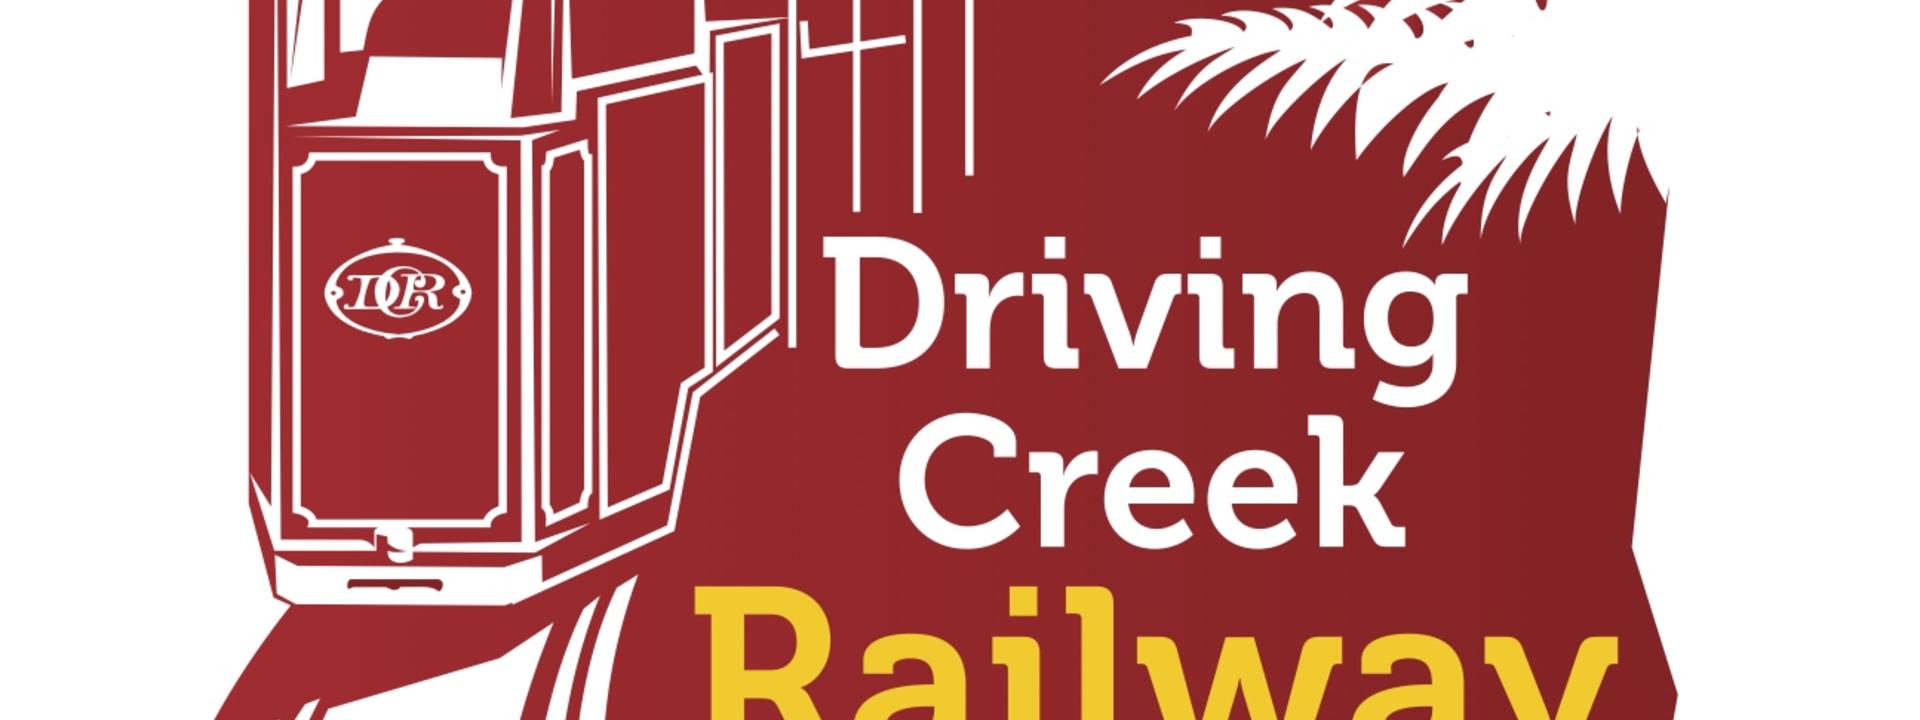 Driving Creek Railway Logo.jpg